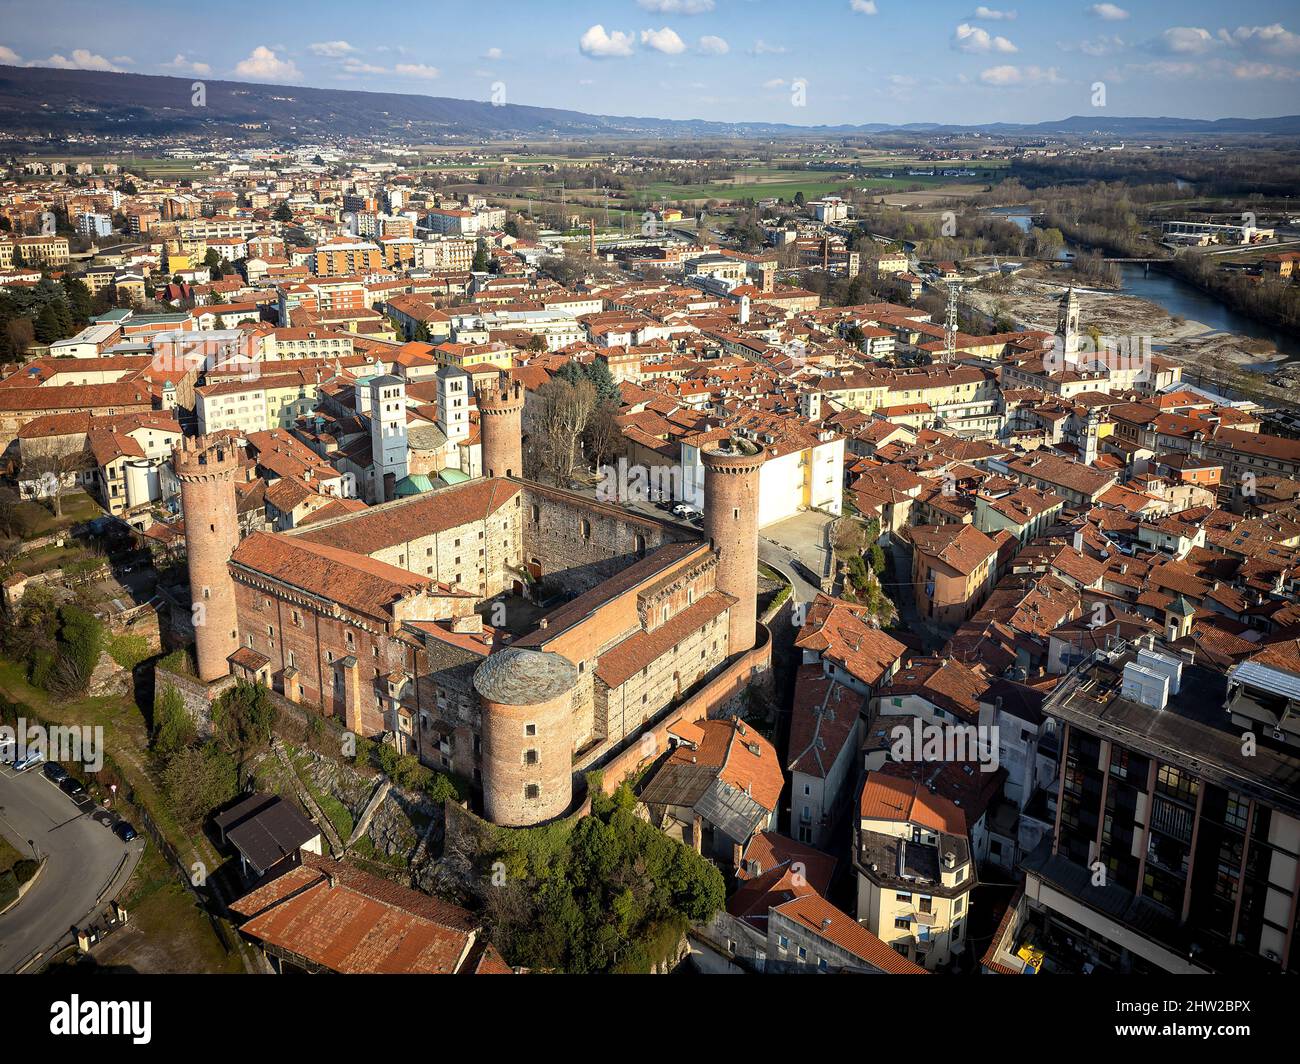 Luftaufnahme des historischen Zentrums mit dem Schloss mit seinen roten Türmen im Vordergrund. Ivrea, Italien - März 2021 Stockfoto